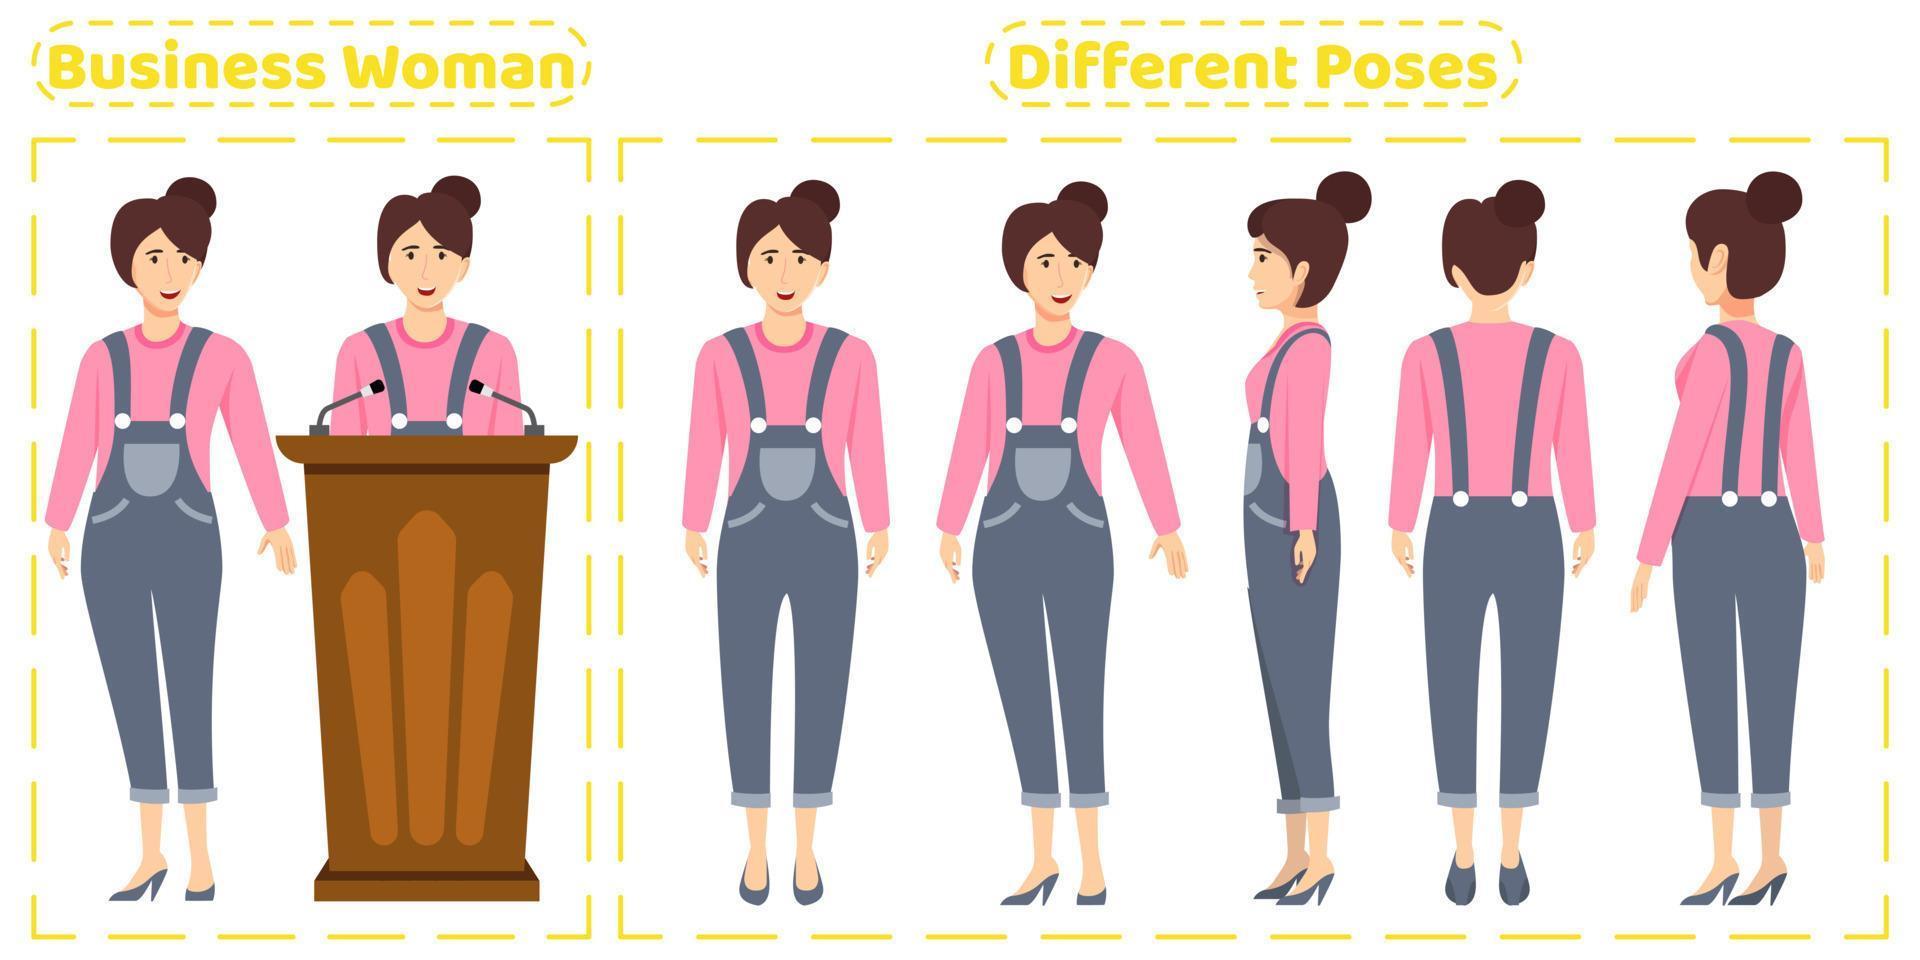 zakenvrouw tekenset met schattige zakelijke outfit met verschillende poses voorkant achteraanzicht met vrolijke gezichtsuitdrukkingen animatie creatie vector